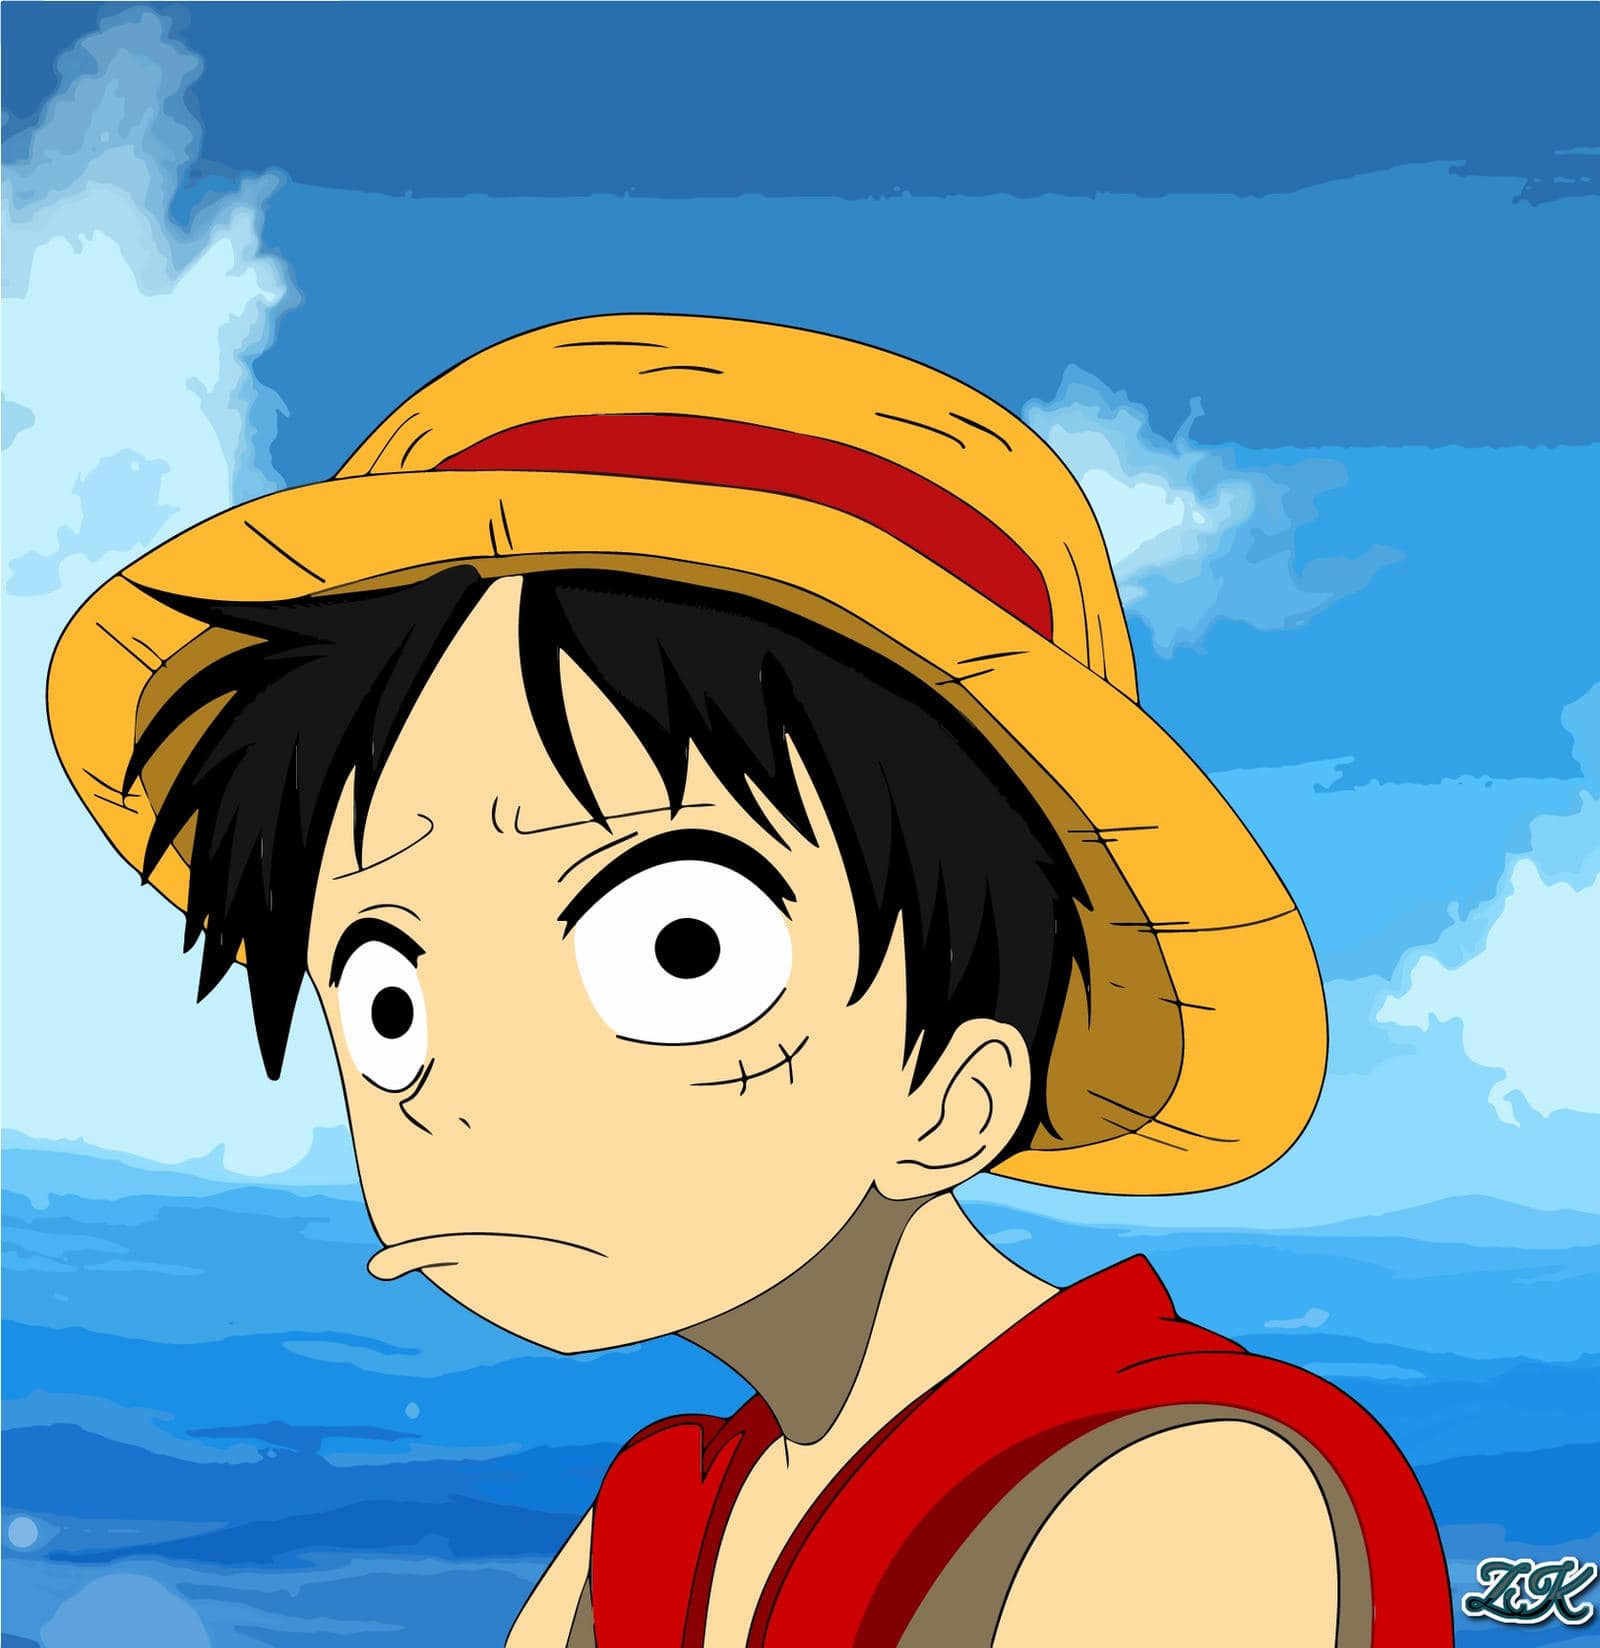 Những hình ảnh buồn về Luffy trong One Piece sẽ khiến trái tim của bạn rung động. Hãy cùng cảm nhận những câu chuyện đầy bi kịch mà nhóm Luffy phải đối mặt.